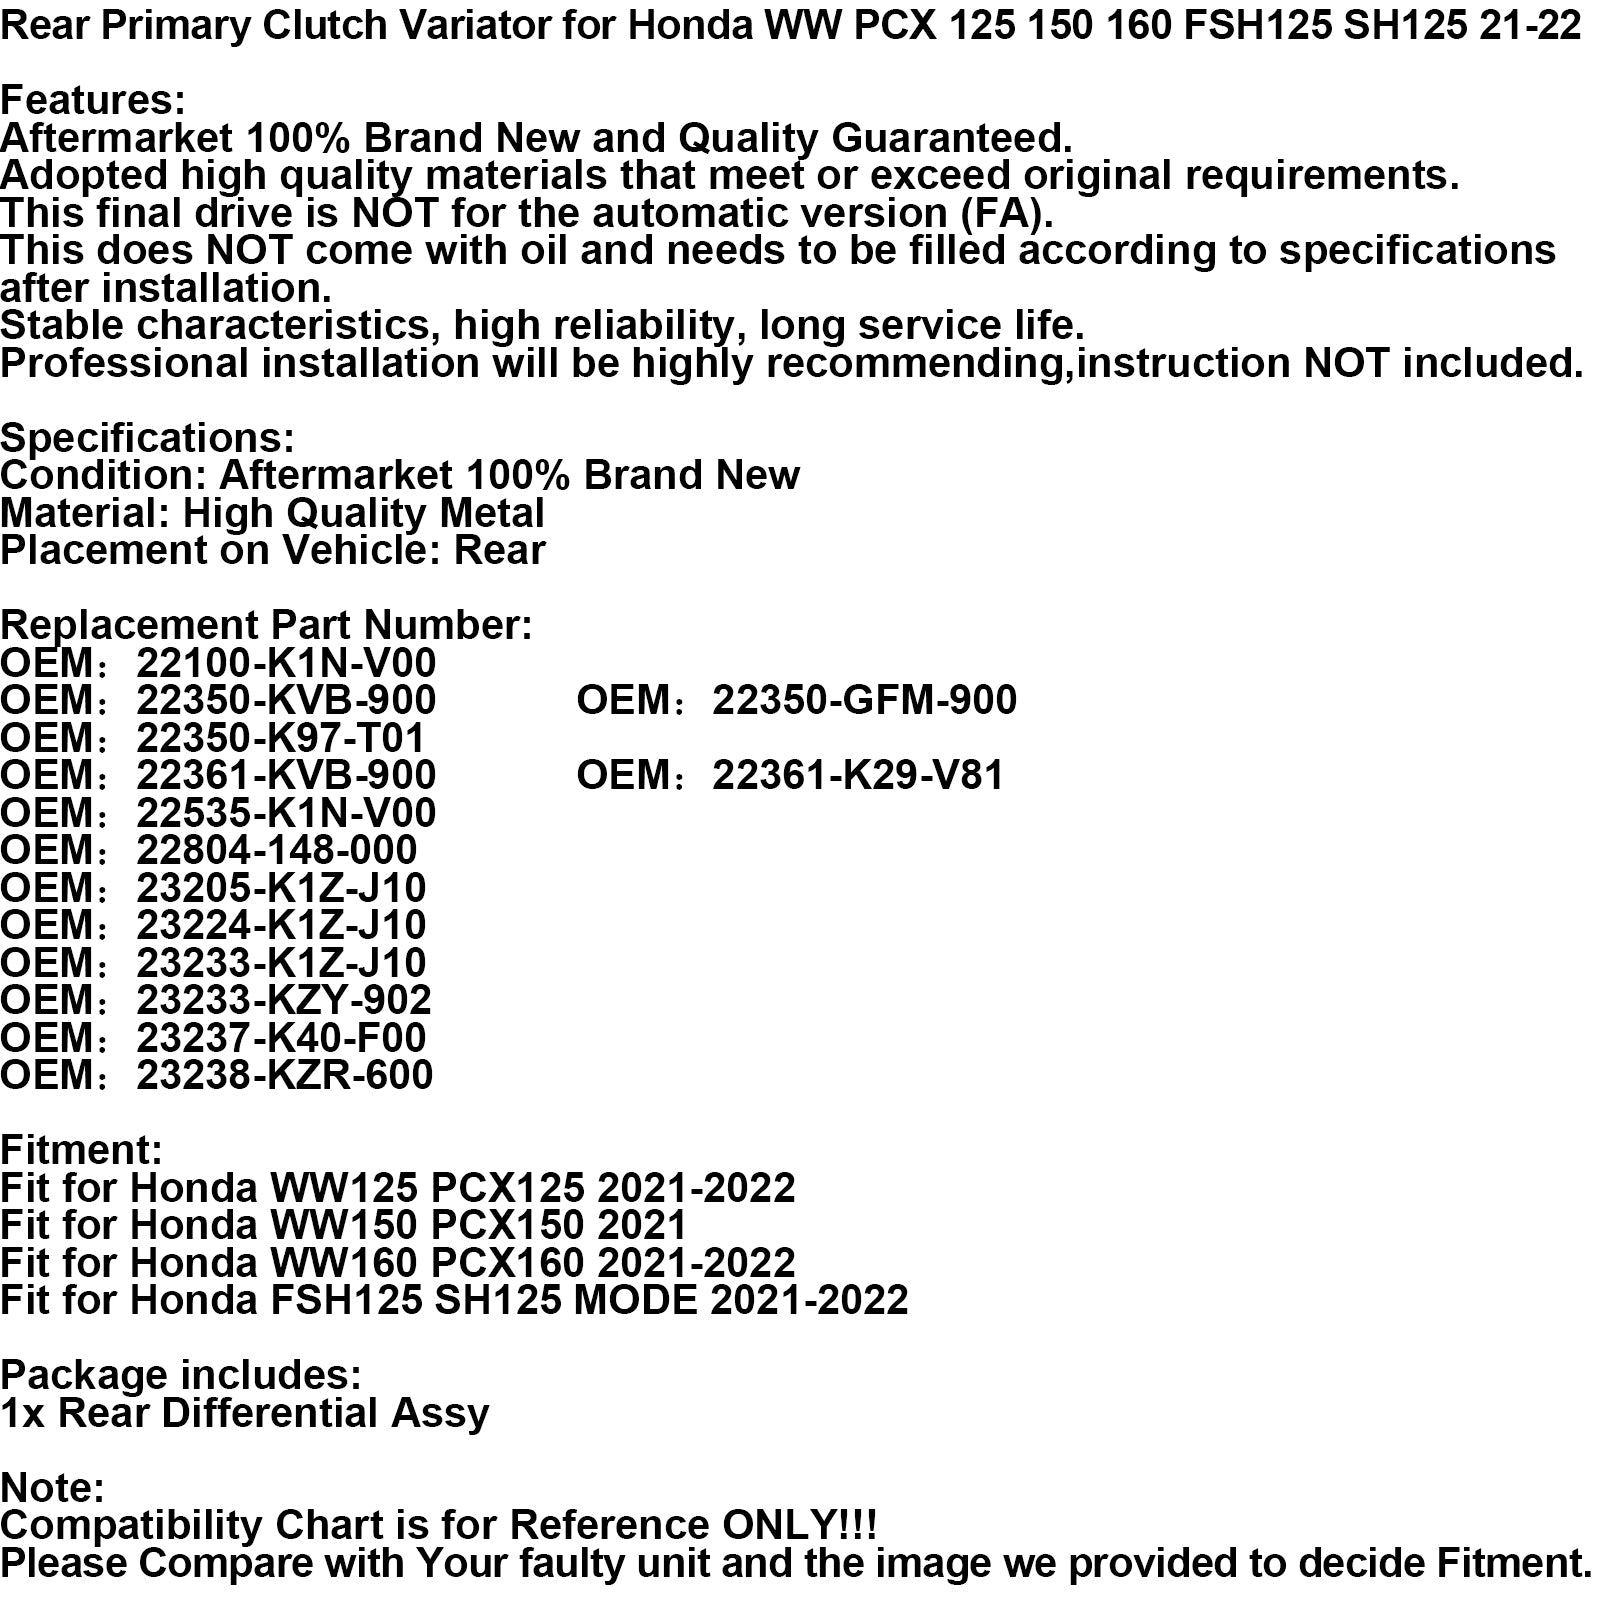 Hinterer Kupplungsvariator primär für Honda Ww Pcx 125 150 160 Fsh125 Sh125 21-2 Generisches FedEx Express-Versand